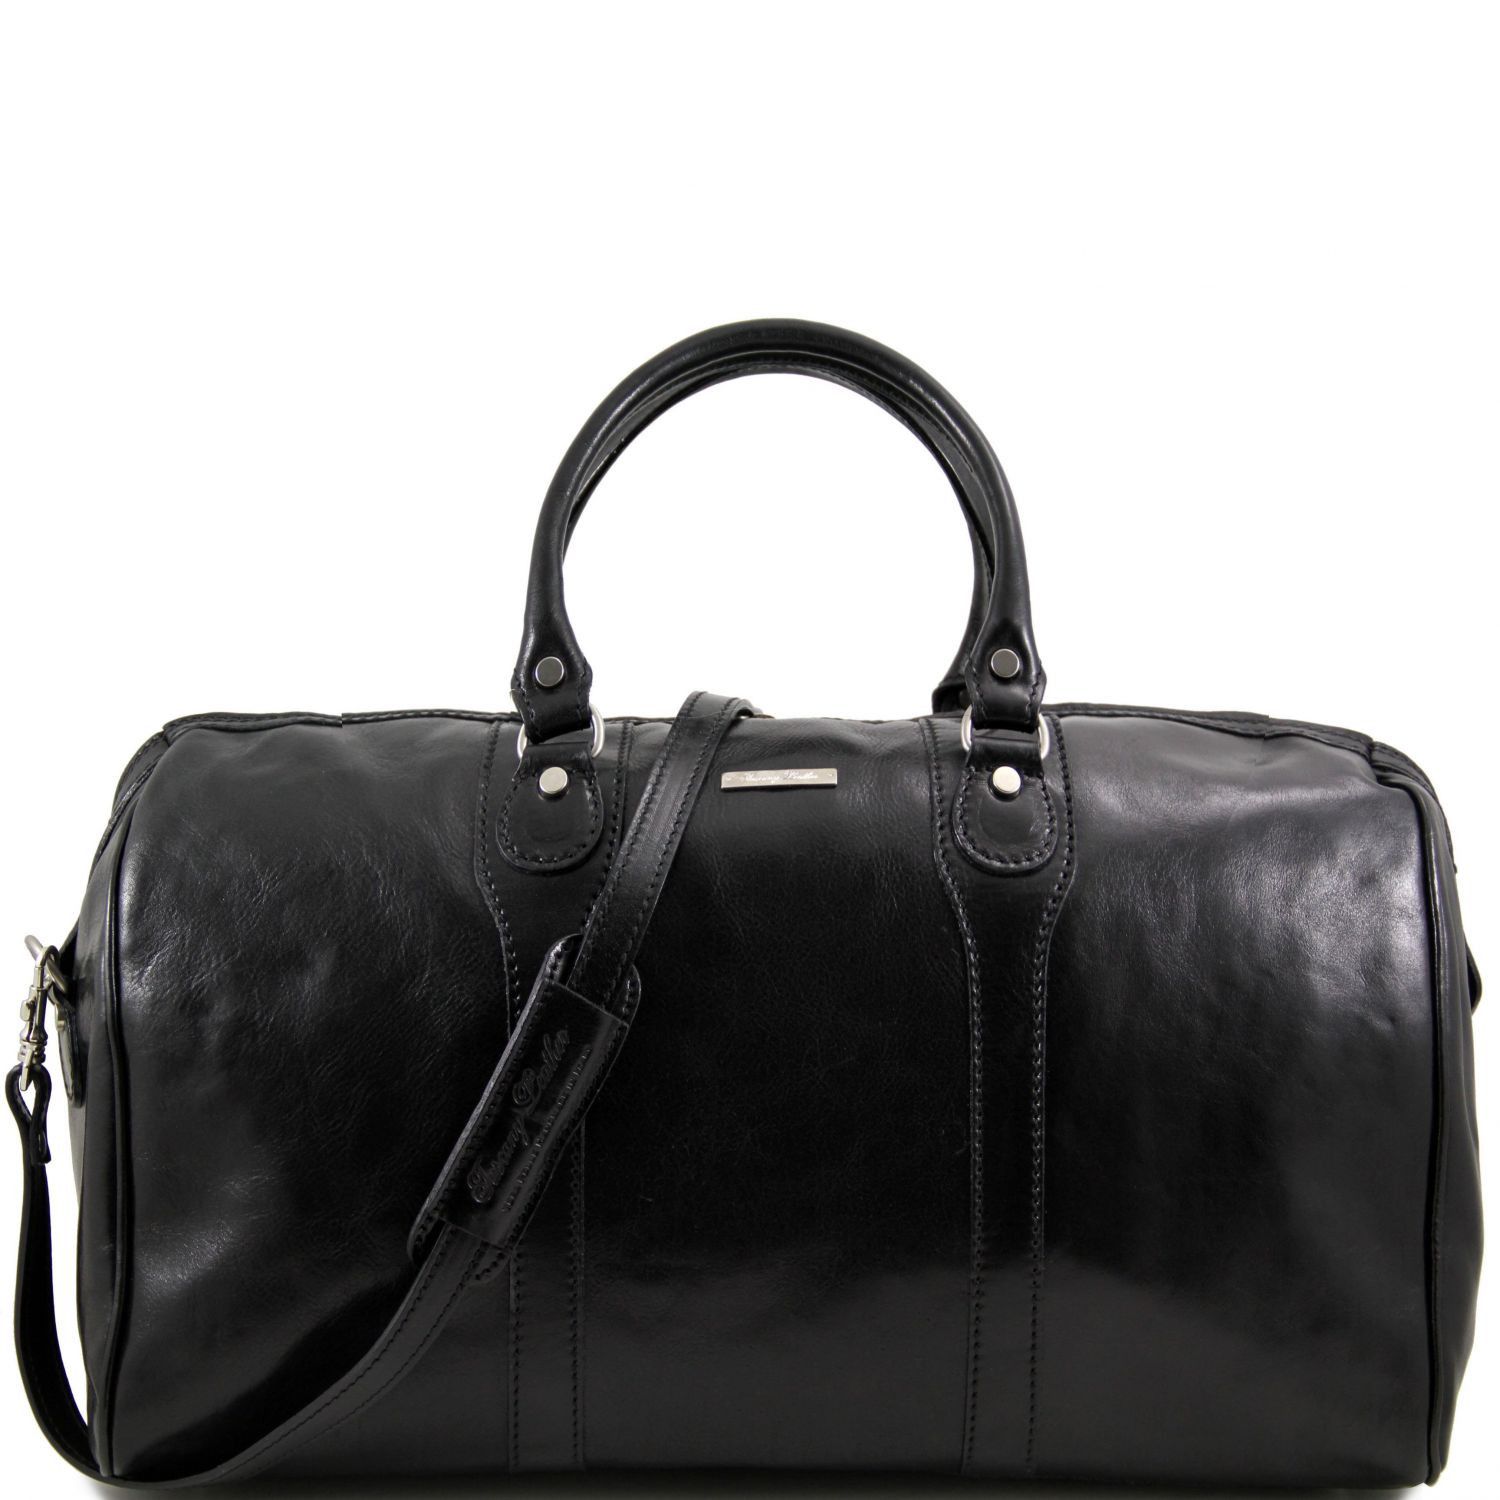 【からのお】 Tuscany Leather - Oslo - Travel leather duffle bag - Weekender ...